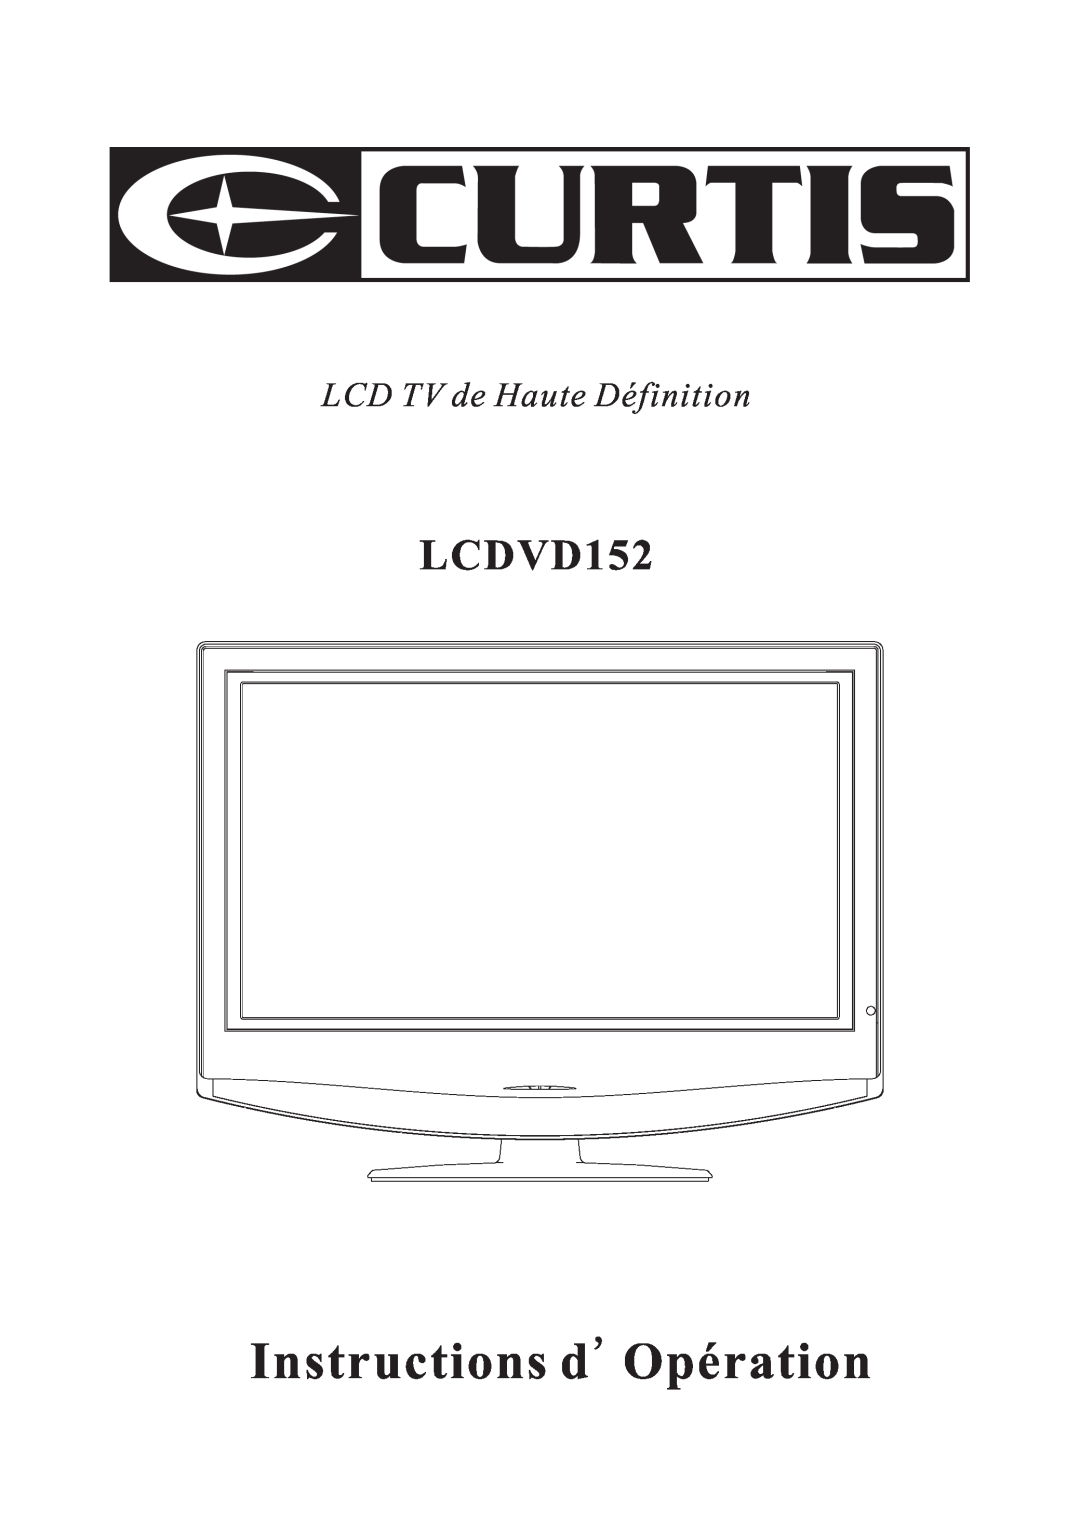 Curtis LCDVD152 manual Instructions dOpération, LCD TV de Haute Définition 